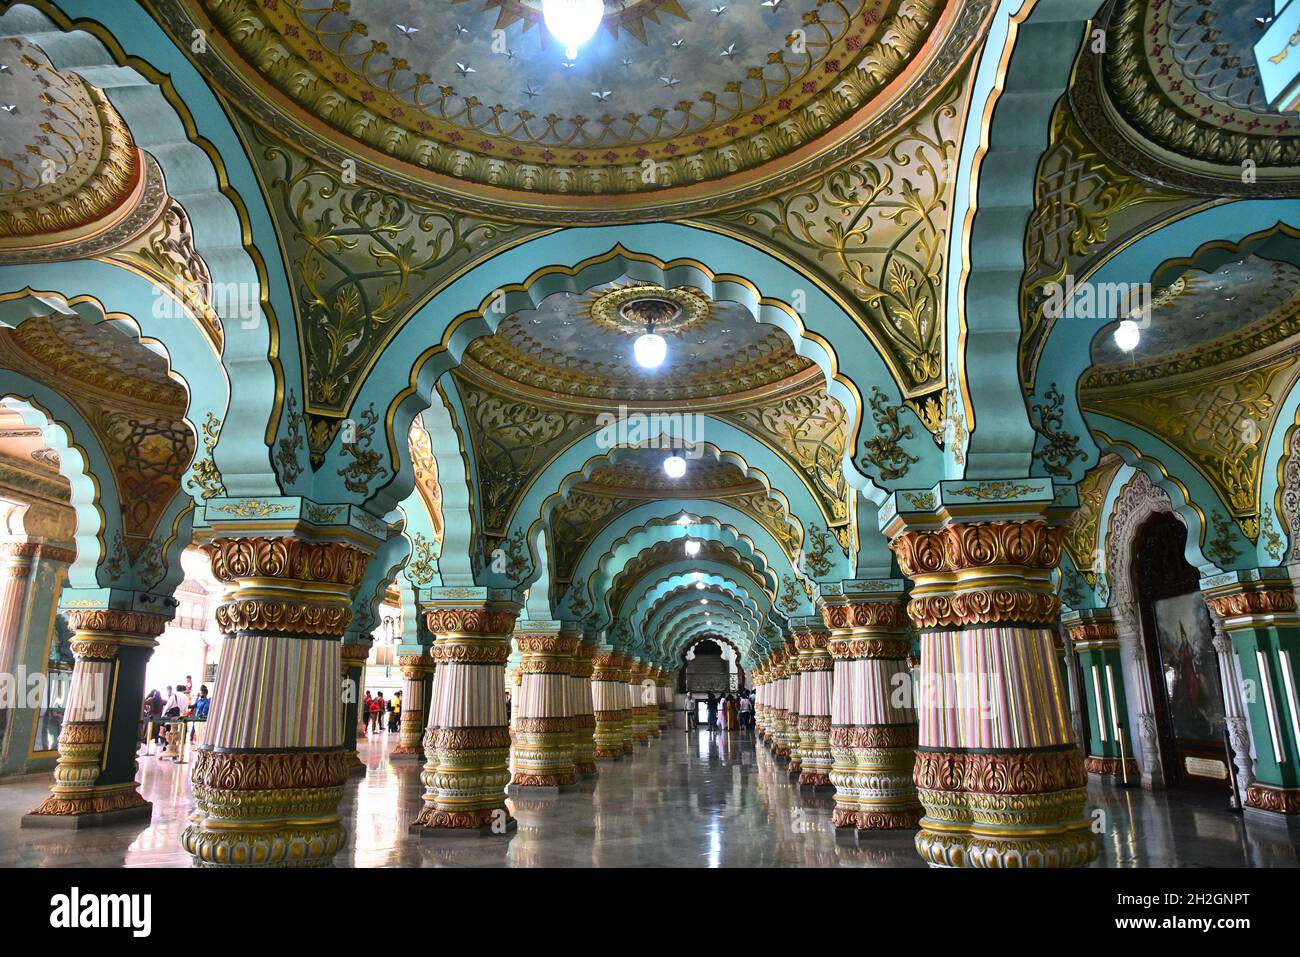 Das Innere des mysore Palastes auch genannt amba vilas Palast, mysore, indien.nach taj mahal ist dies das am meisten besuchte Touristenziel in indien. Stockfoto